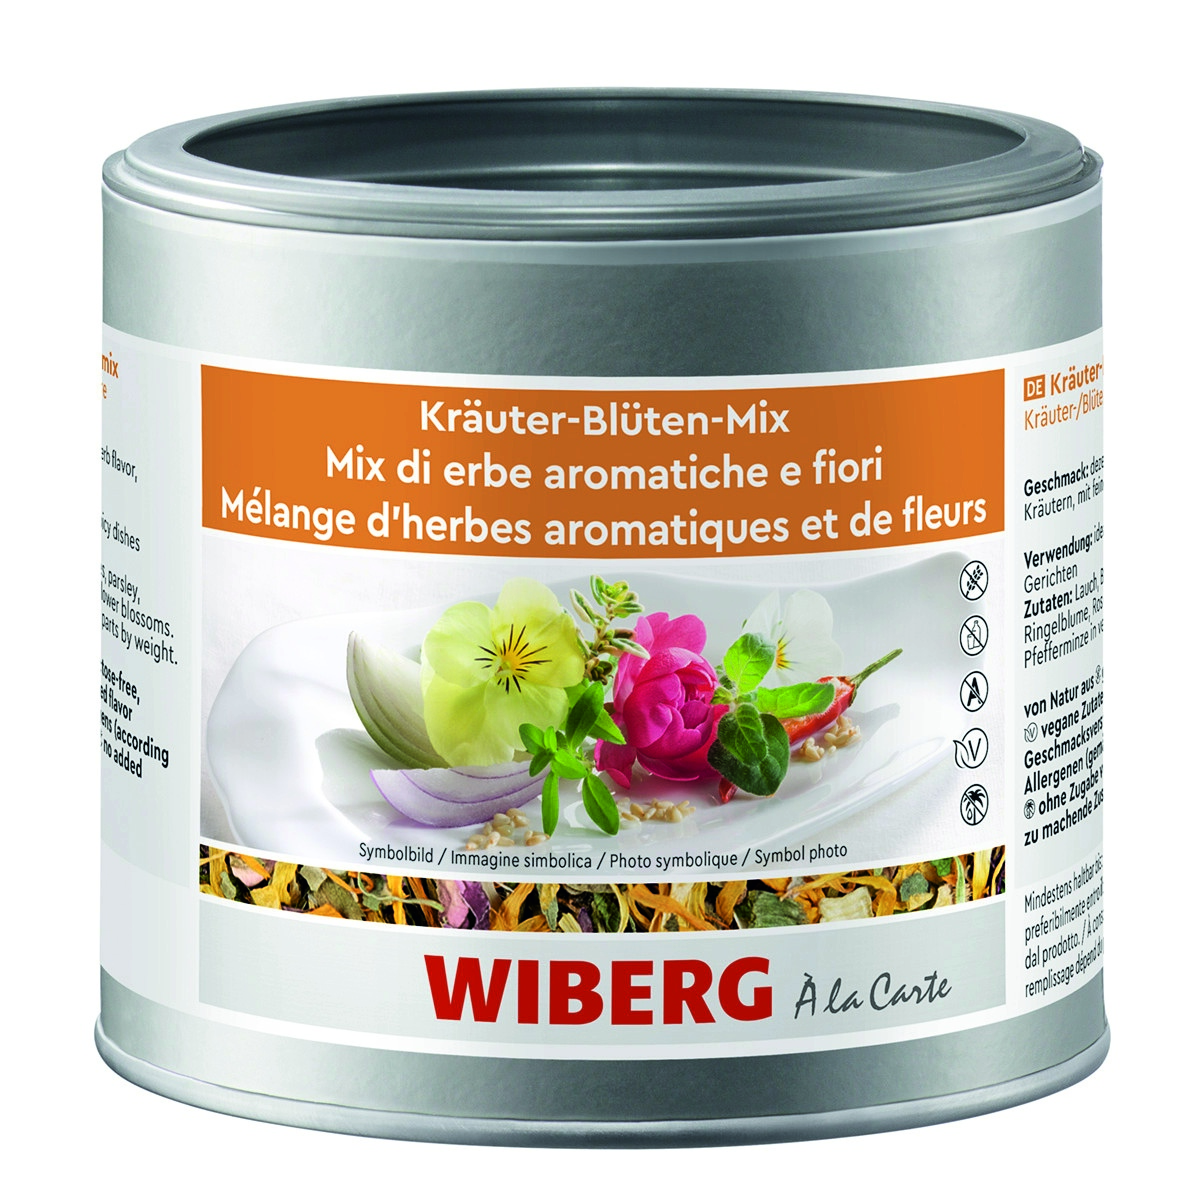 WIBERG Kräuter-Blüten-Mix